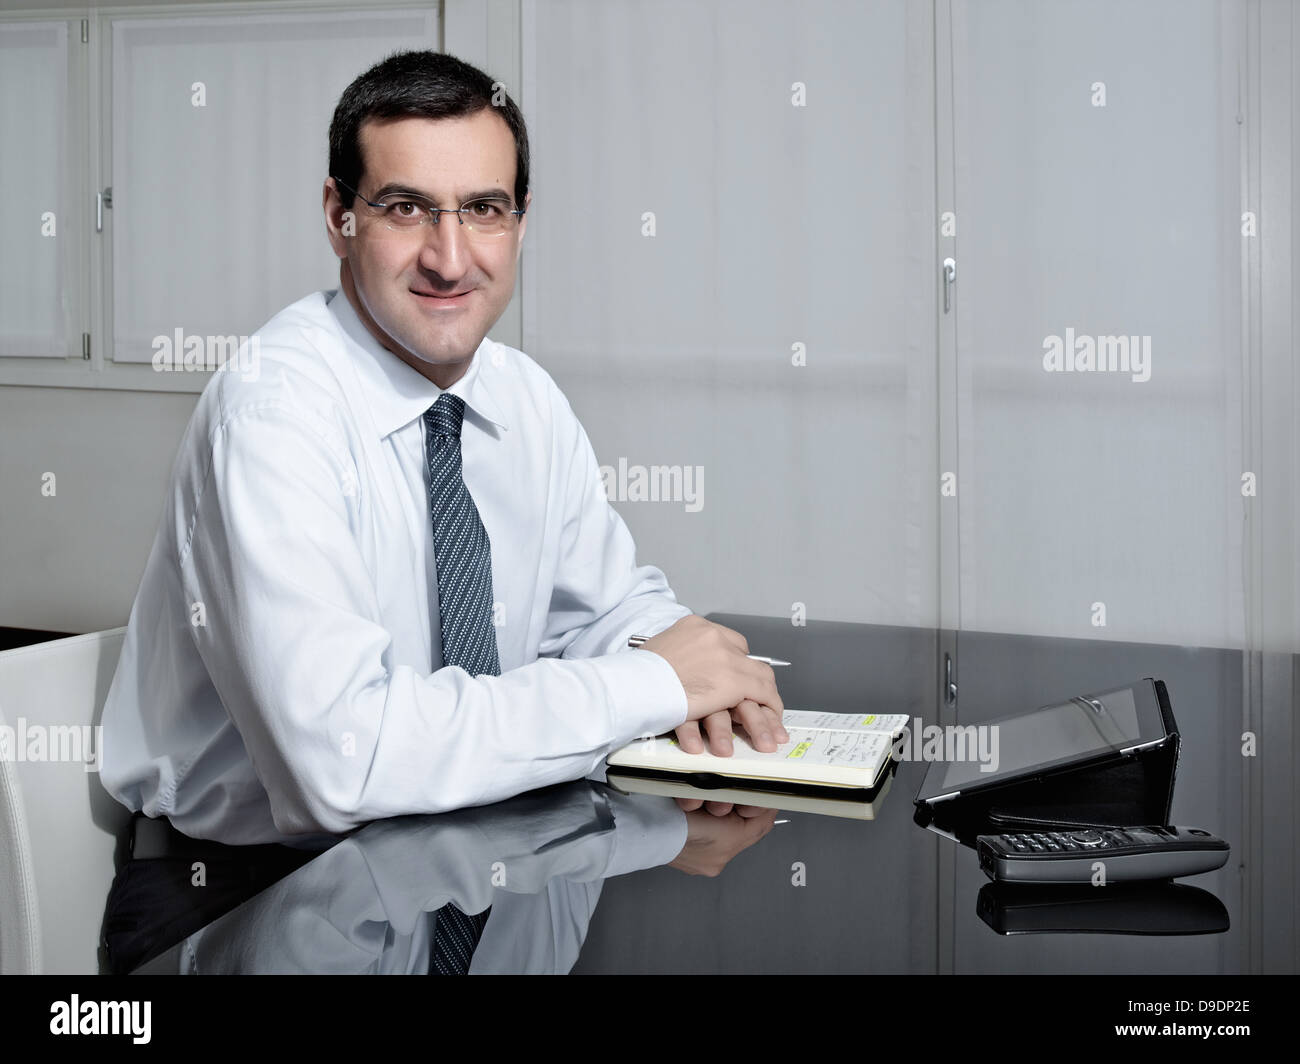 Portrait of mature businessman at desk Banque D'Images